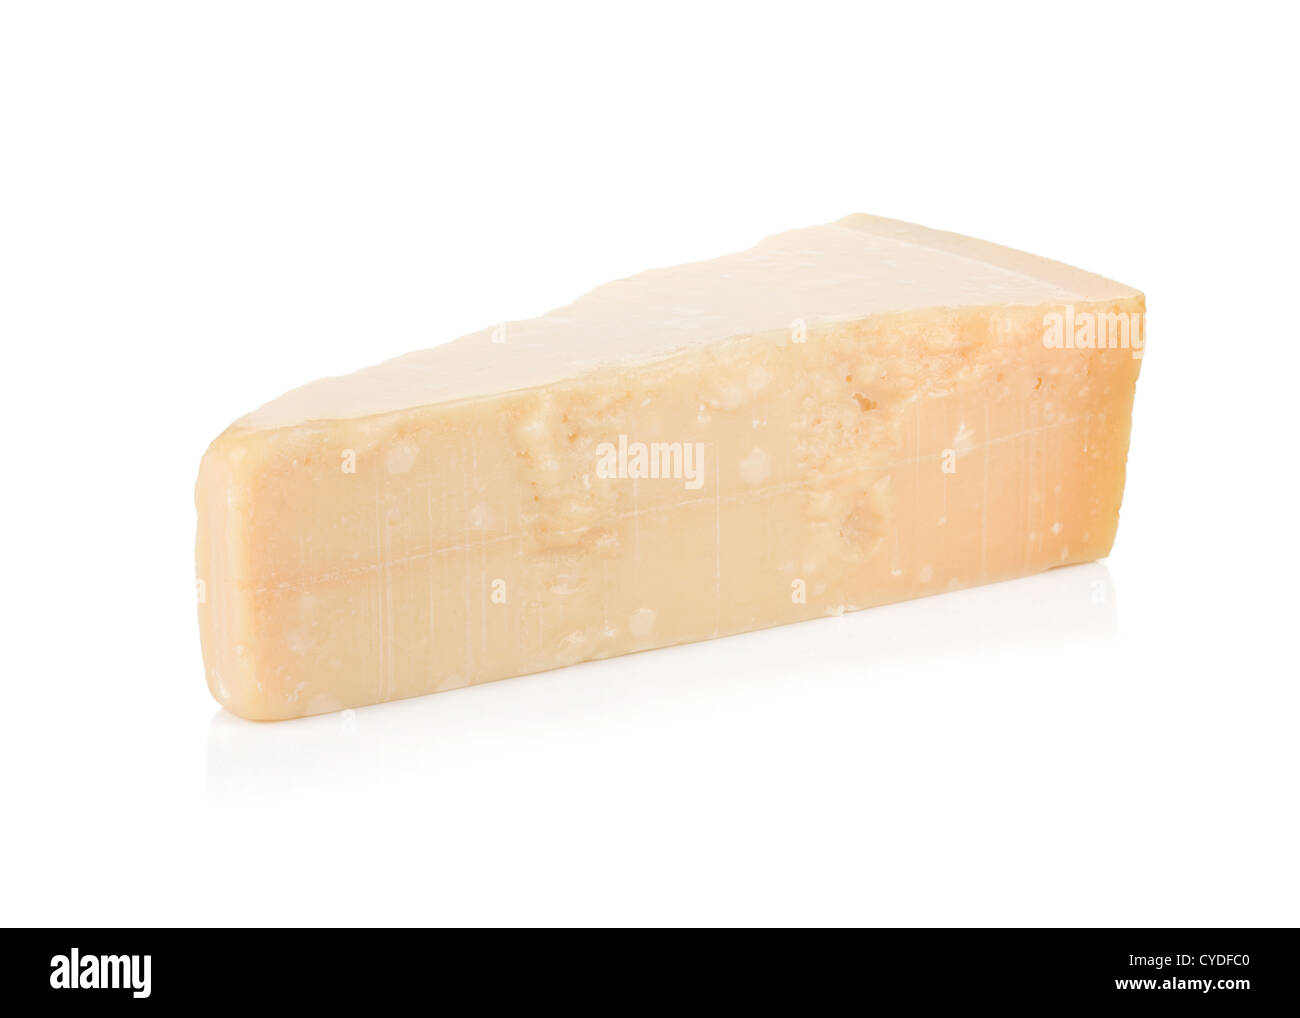 Il formaggio parmigiano reggiano. Isolato su sfondo bianco Foto Stock